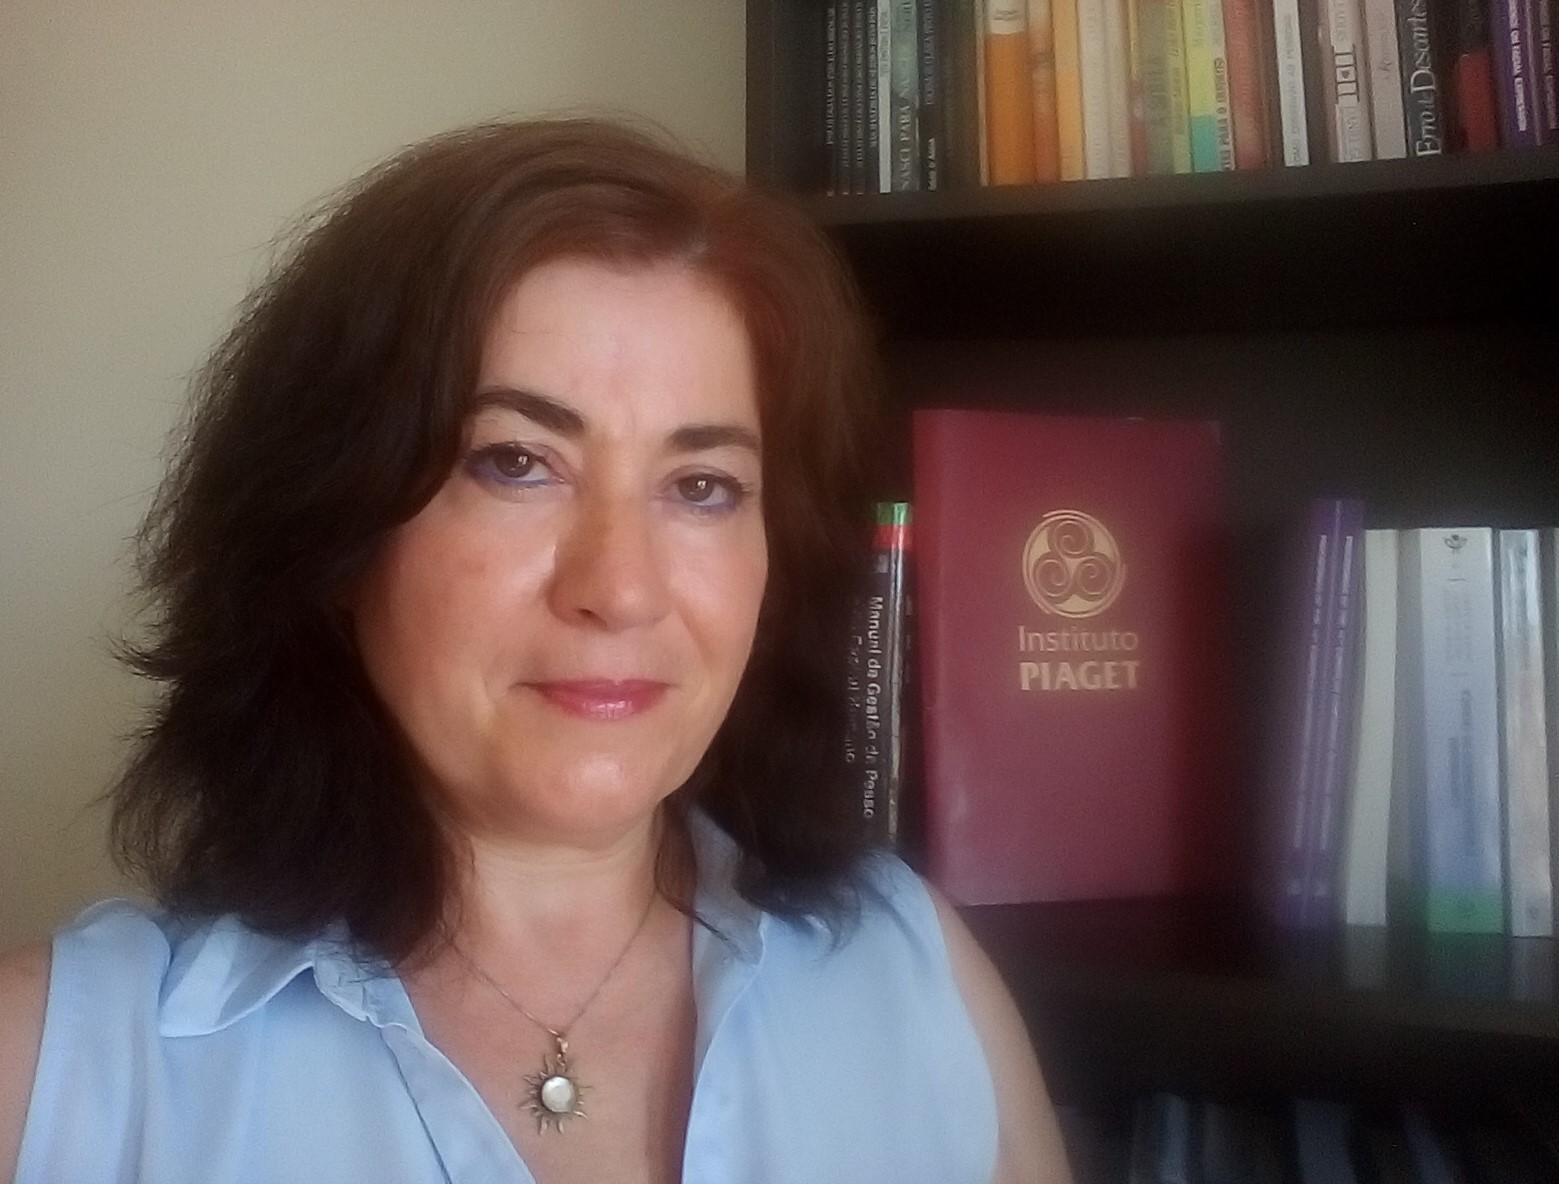 Professora Cristina de Sousa, Coordenadora do Mestrado de Psicologia Social e das Organizações, Instituto Piaget de Almada